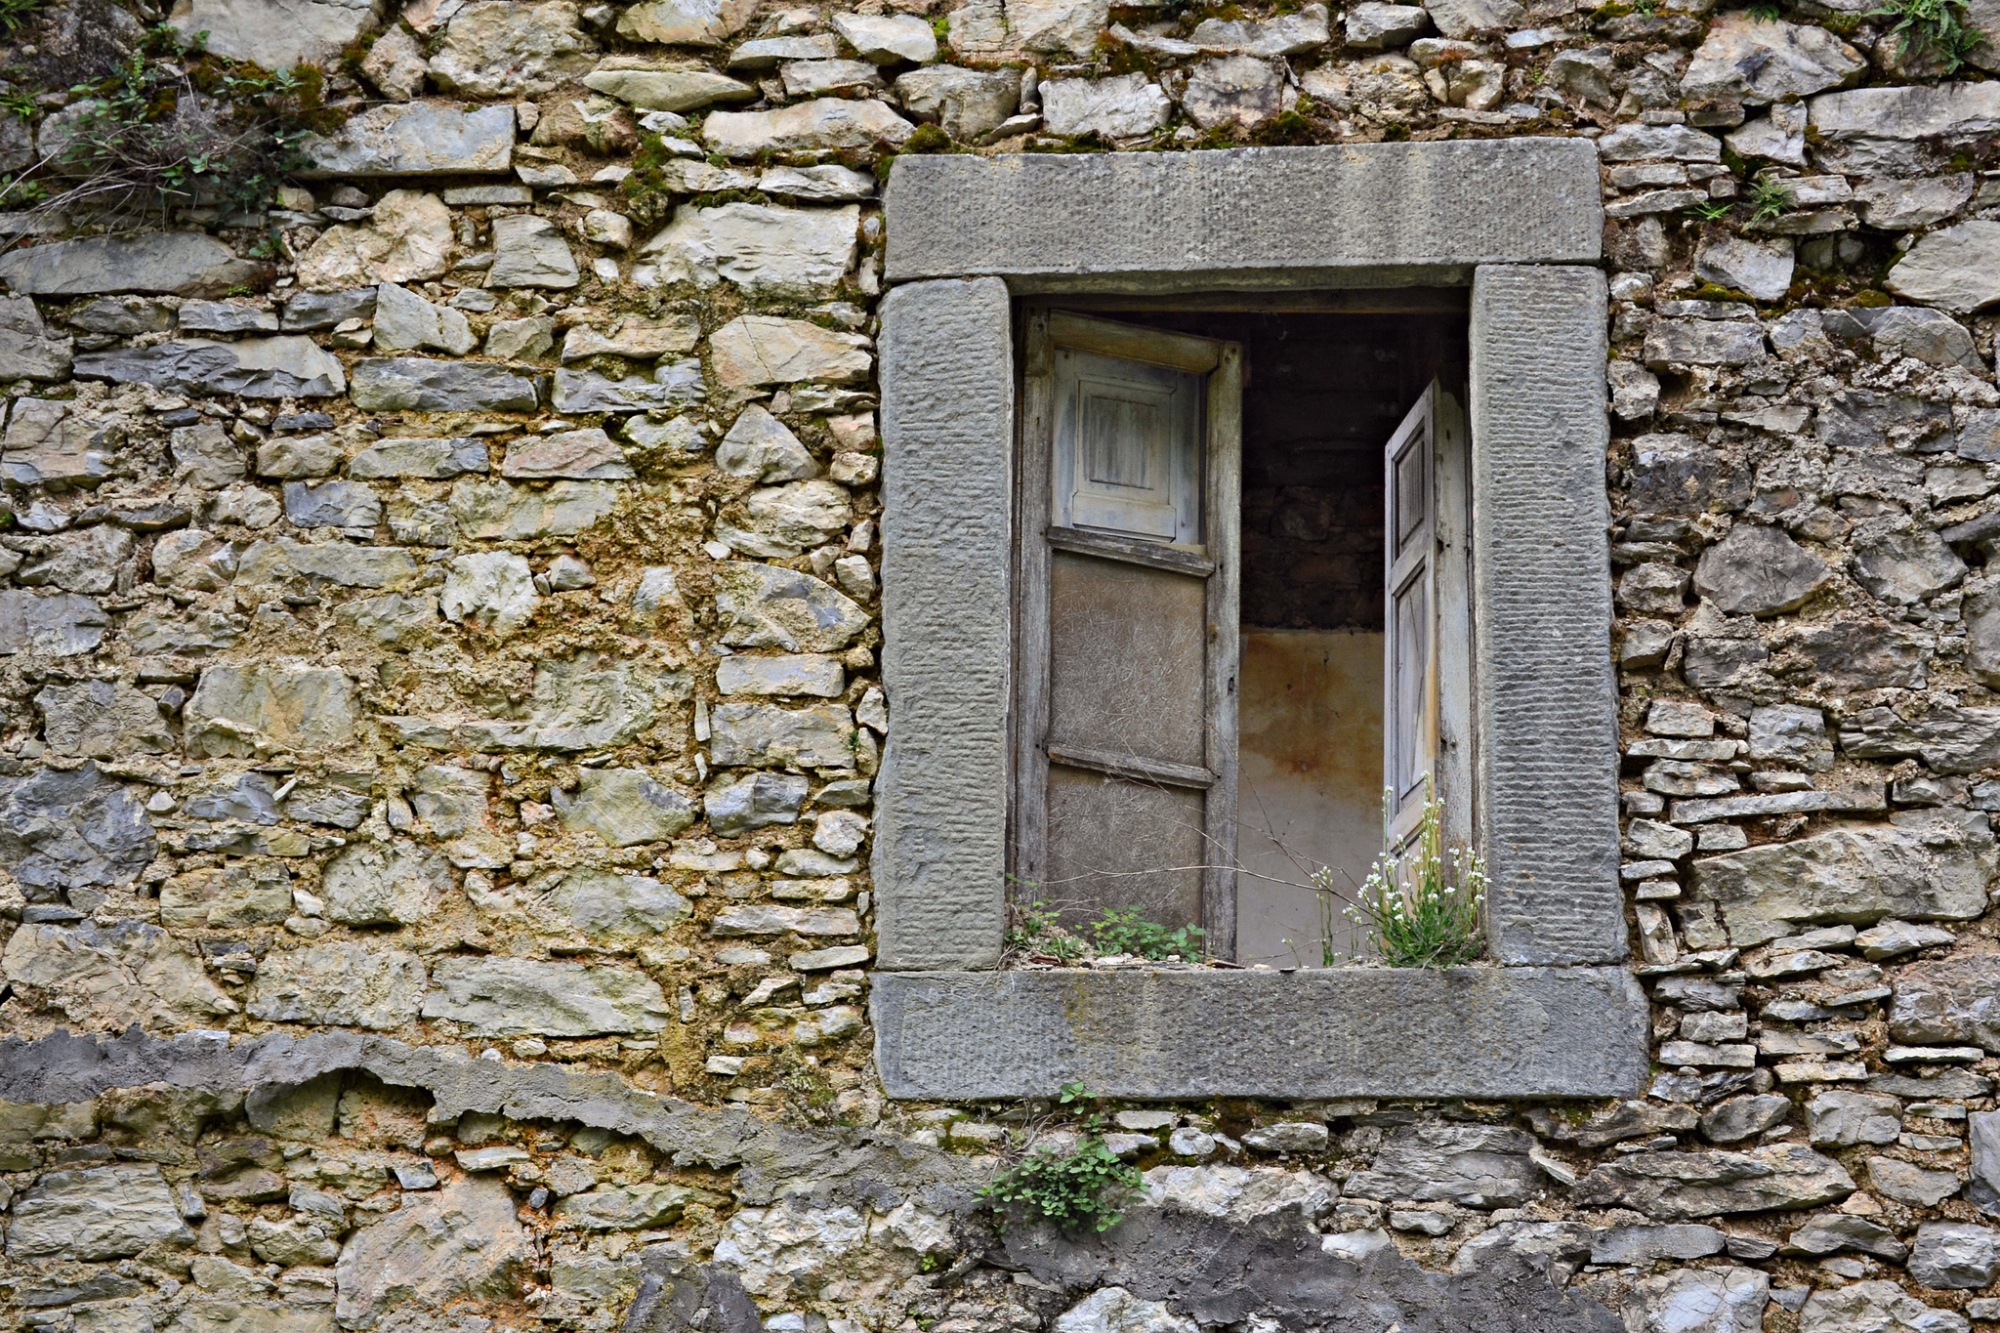 Il fascino di un angolo abbandonato a Rontano, frazione di Castelnuovo di Garfagnana